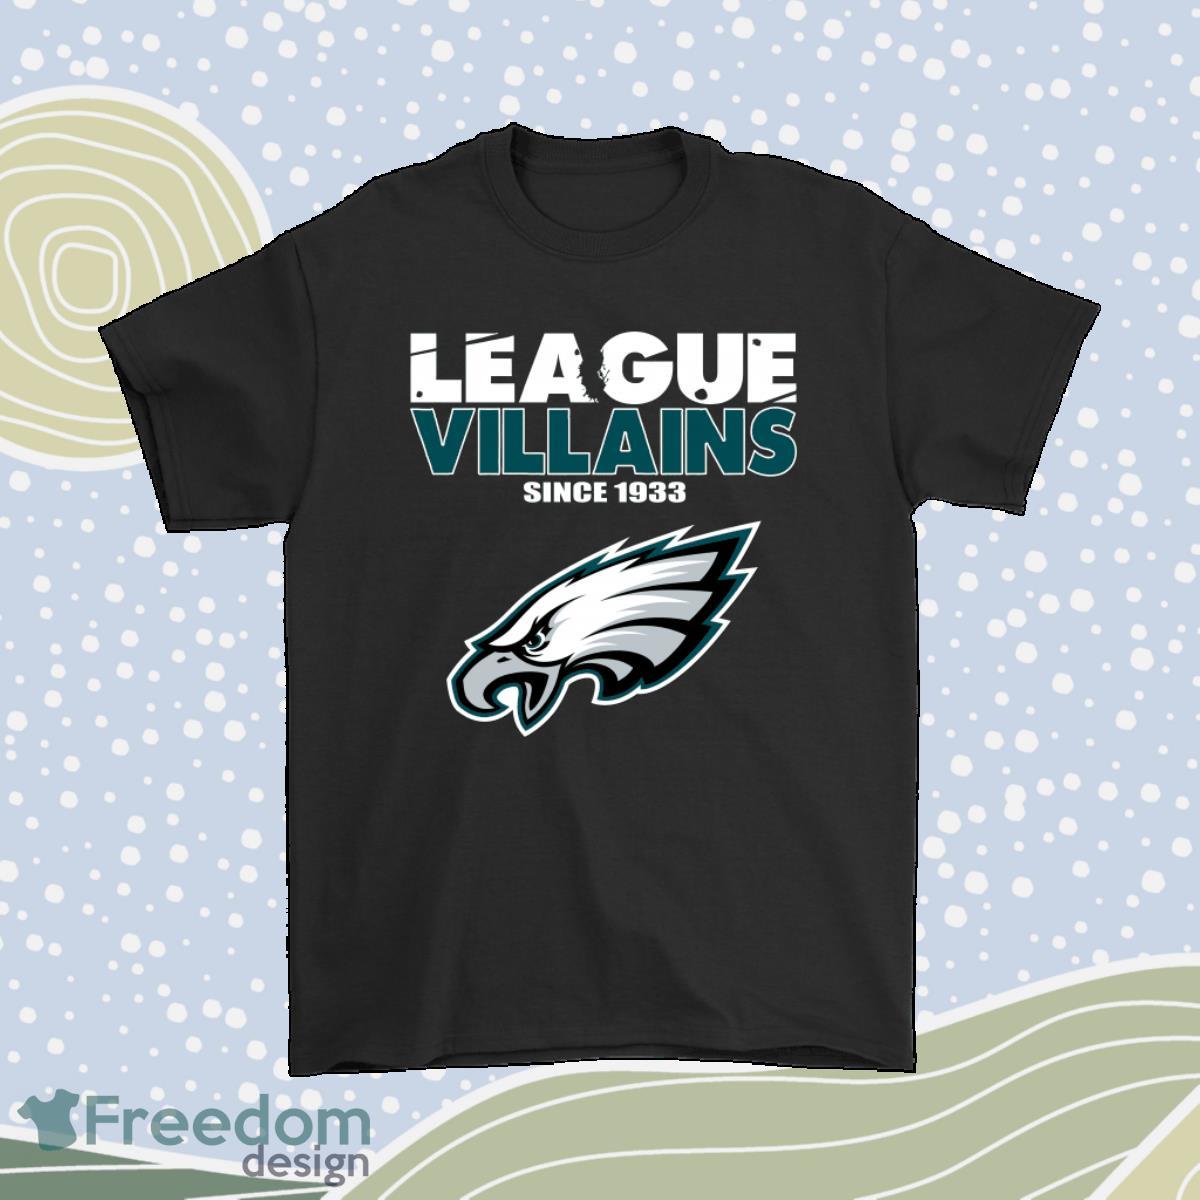 League Villains Since 1933 Philadelphia Eagles Nfl Shirt Product Photo 1